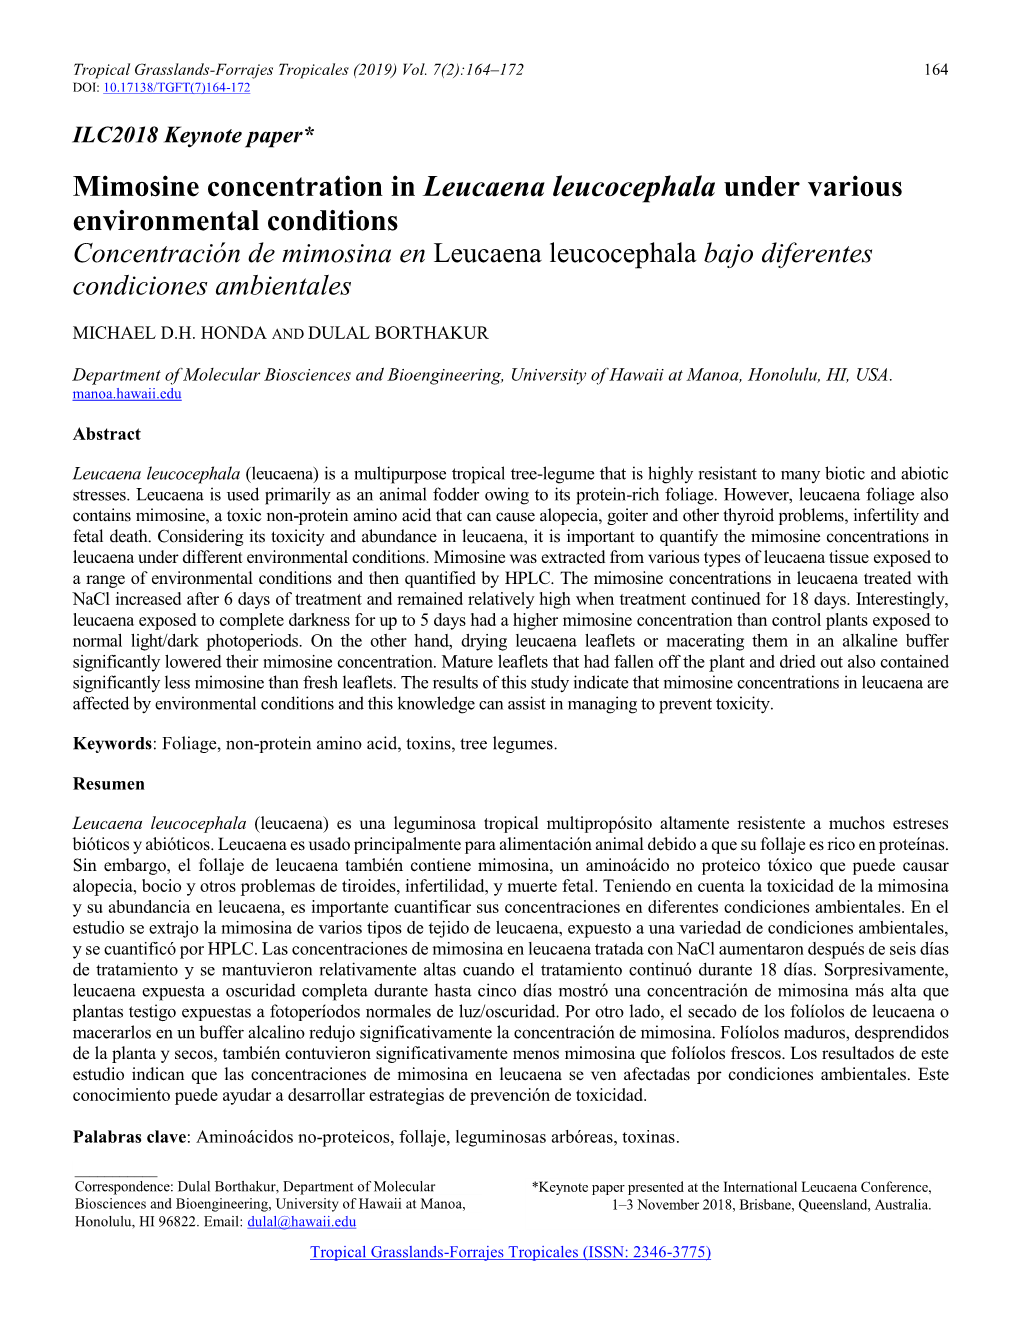 Mimosine Concentration in Leucaena Leucocephala Under Various Environmental Conditions